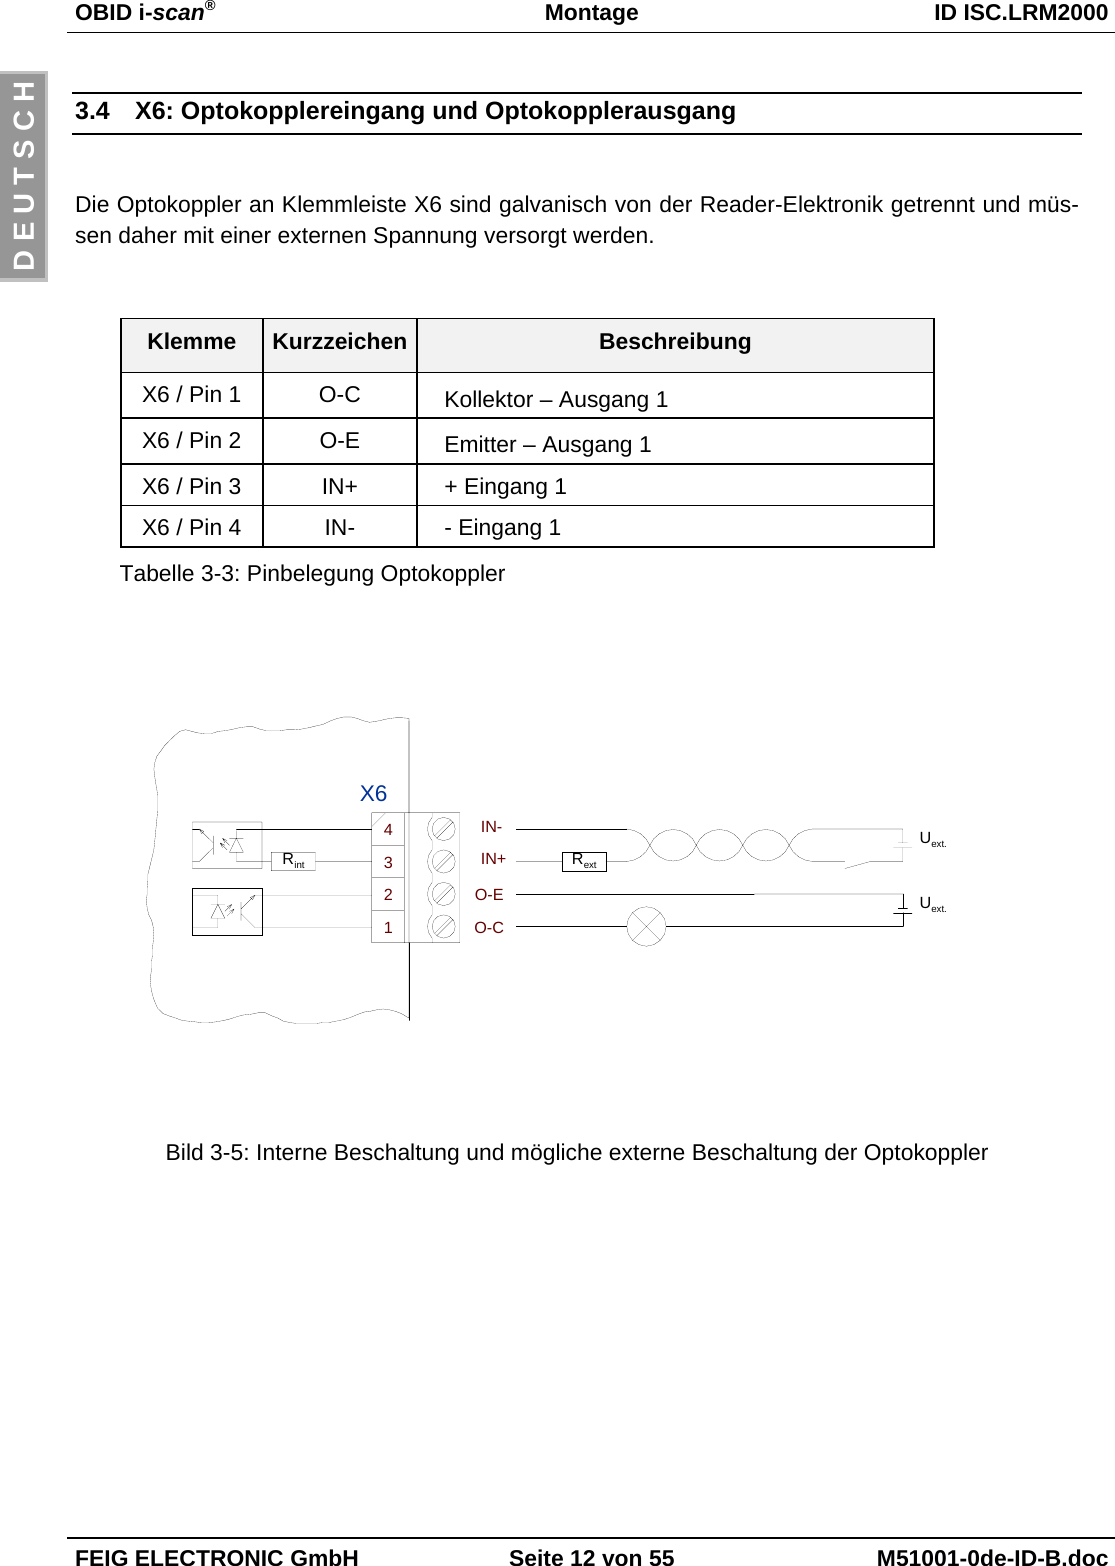 OBID i-scan®Montage ID ISC.LRM2000FEIG ELECTRONIC GmbH Seite 12 von 55 M51001-0de-ID-B.docD E U T S C H3.4  X6: Optokopplereingang und OptokopplerausgangDie Optokoppler an Klemmleiste X6 sind galvanisch von der Reader-Elektronik getrennt und müs-sen daher mit einer externen Spannung versorgt werden. Klemme Kurzzeichen BeschreibungX6 / Pin 1 O-C Kollektor – Ausgang 1X6 / Pin 2 O-E Emitter – Ausgang 1X6 / Pin 3 IN+ + Eingang 1X6 / Pin 4 IN- - Eingang 1Tabelle 3-3: Pinbelegung OptokopplerBild 3-5: Interne Beschaltung und mögliche externe Beschaltung der OptokopplerUext.IN+IN-RextRintO-CO-E Uext.2134X6